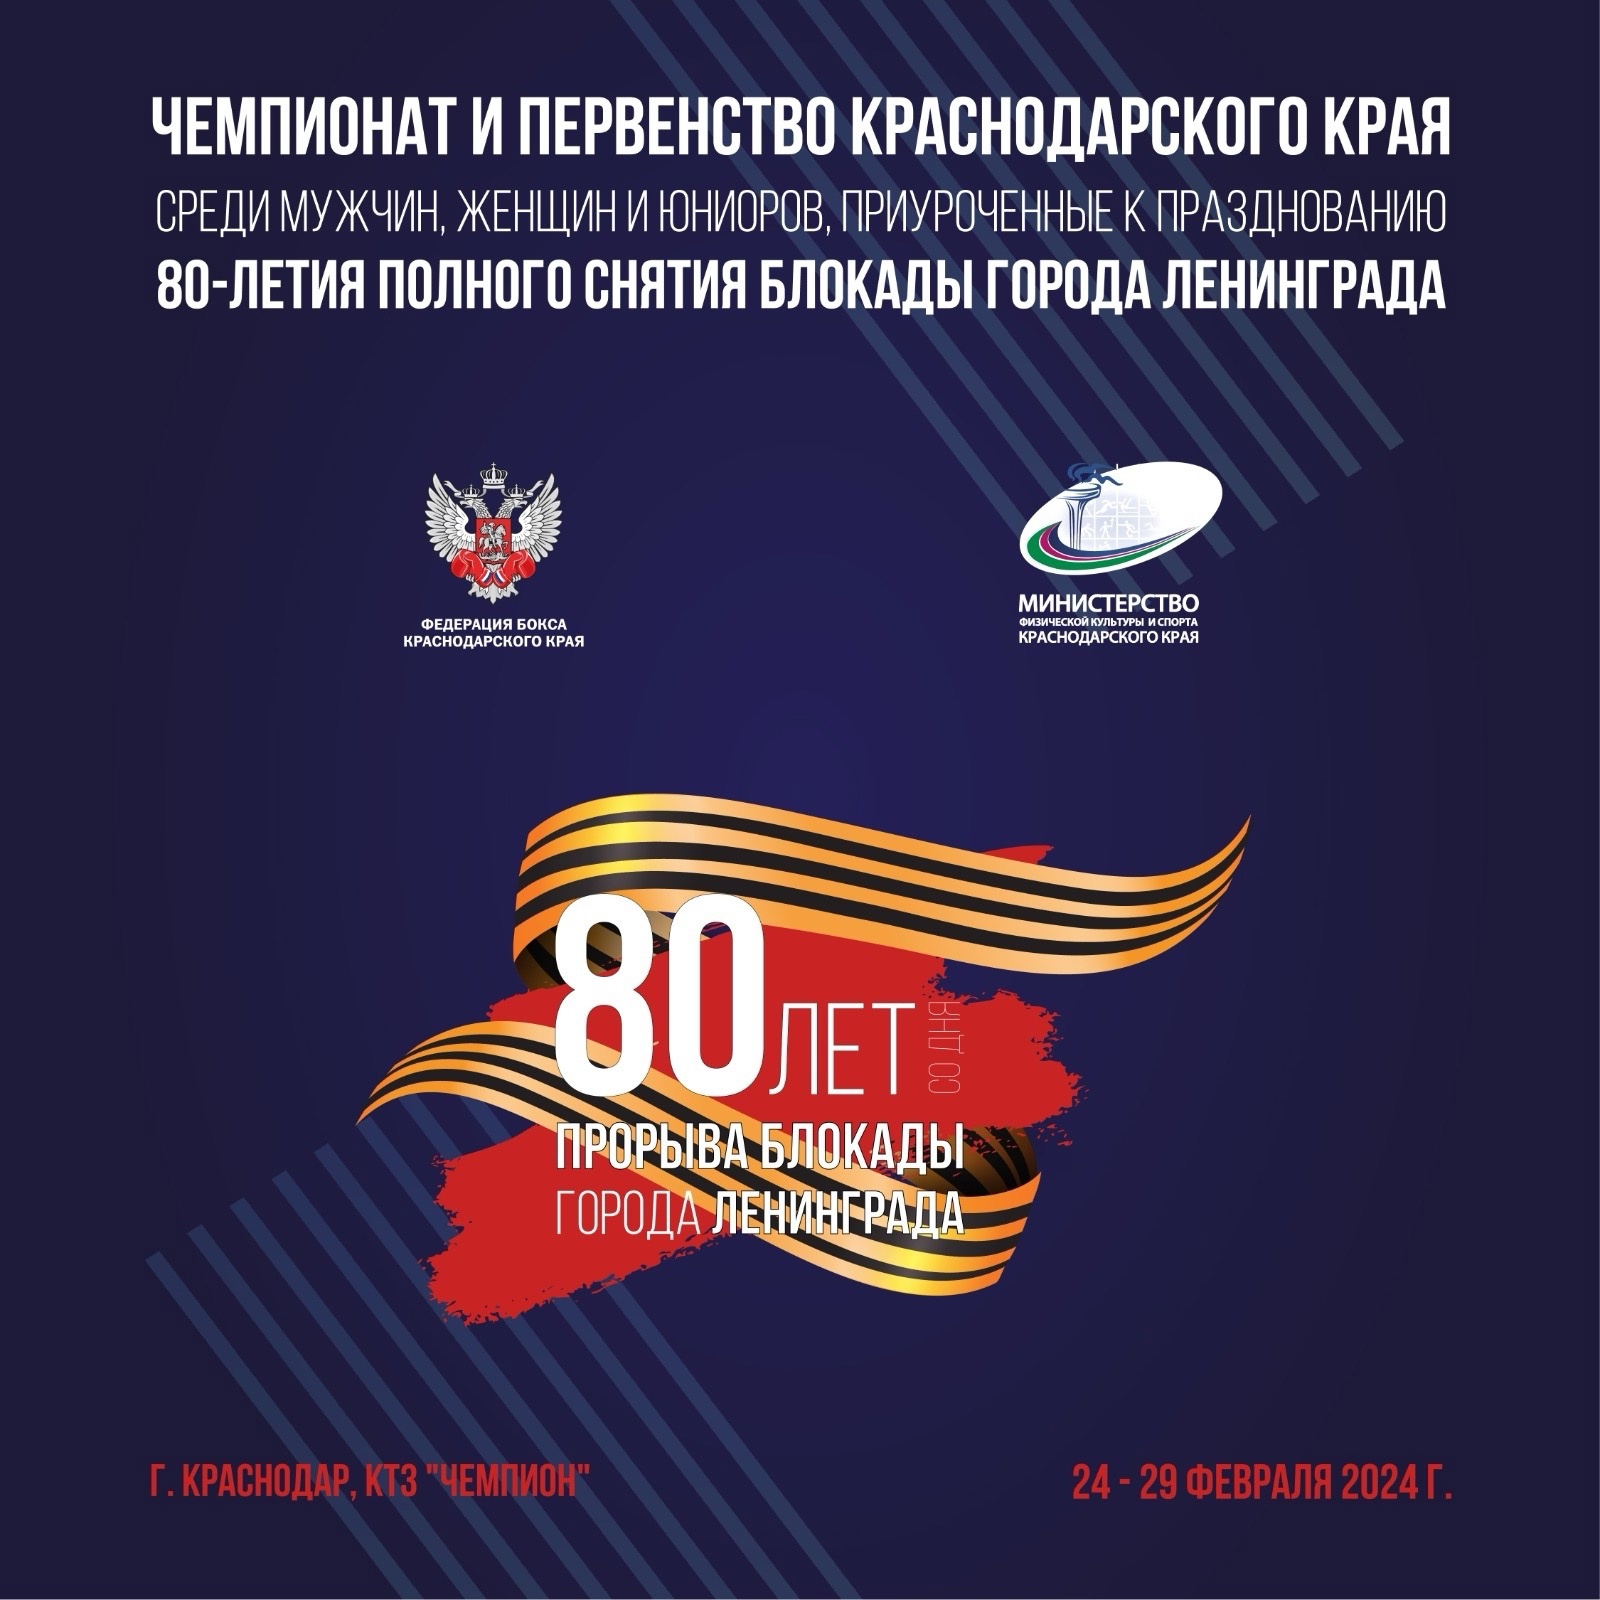 Поздравляем победителей и призеров Чемпионата и Первенства Краснодарского края по боксу среди мужчин, женщин (19-40 лет), юниоров (17-18 лет и 19-22 года)